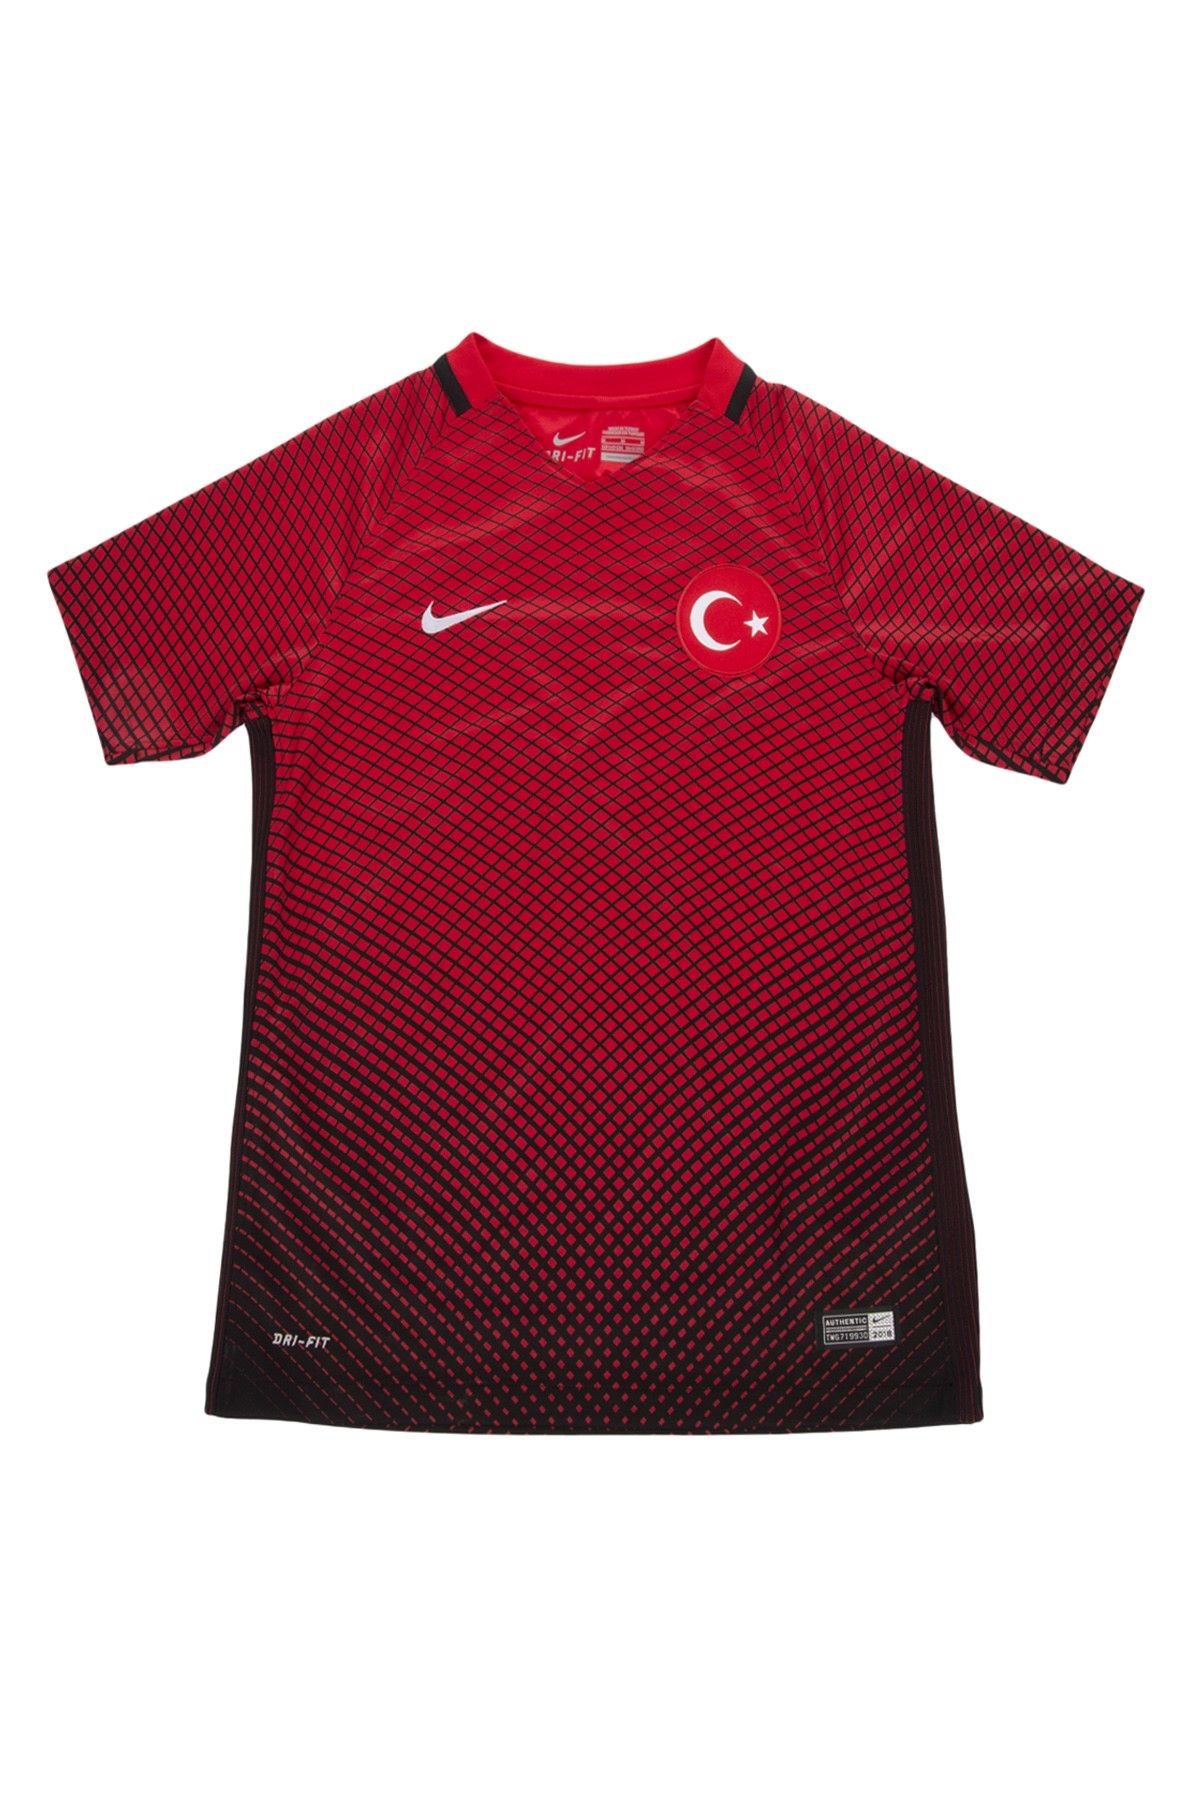 Galatasaray Çocuk Milli Takım Forma 1162S015-C32002